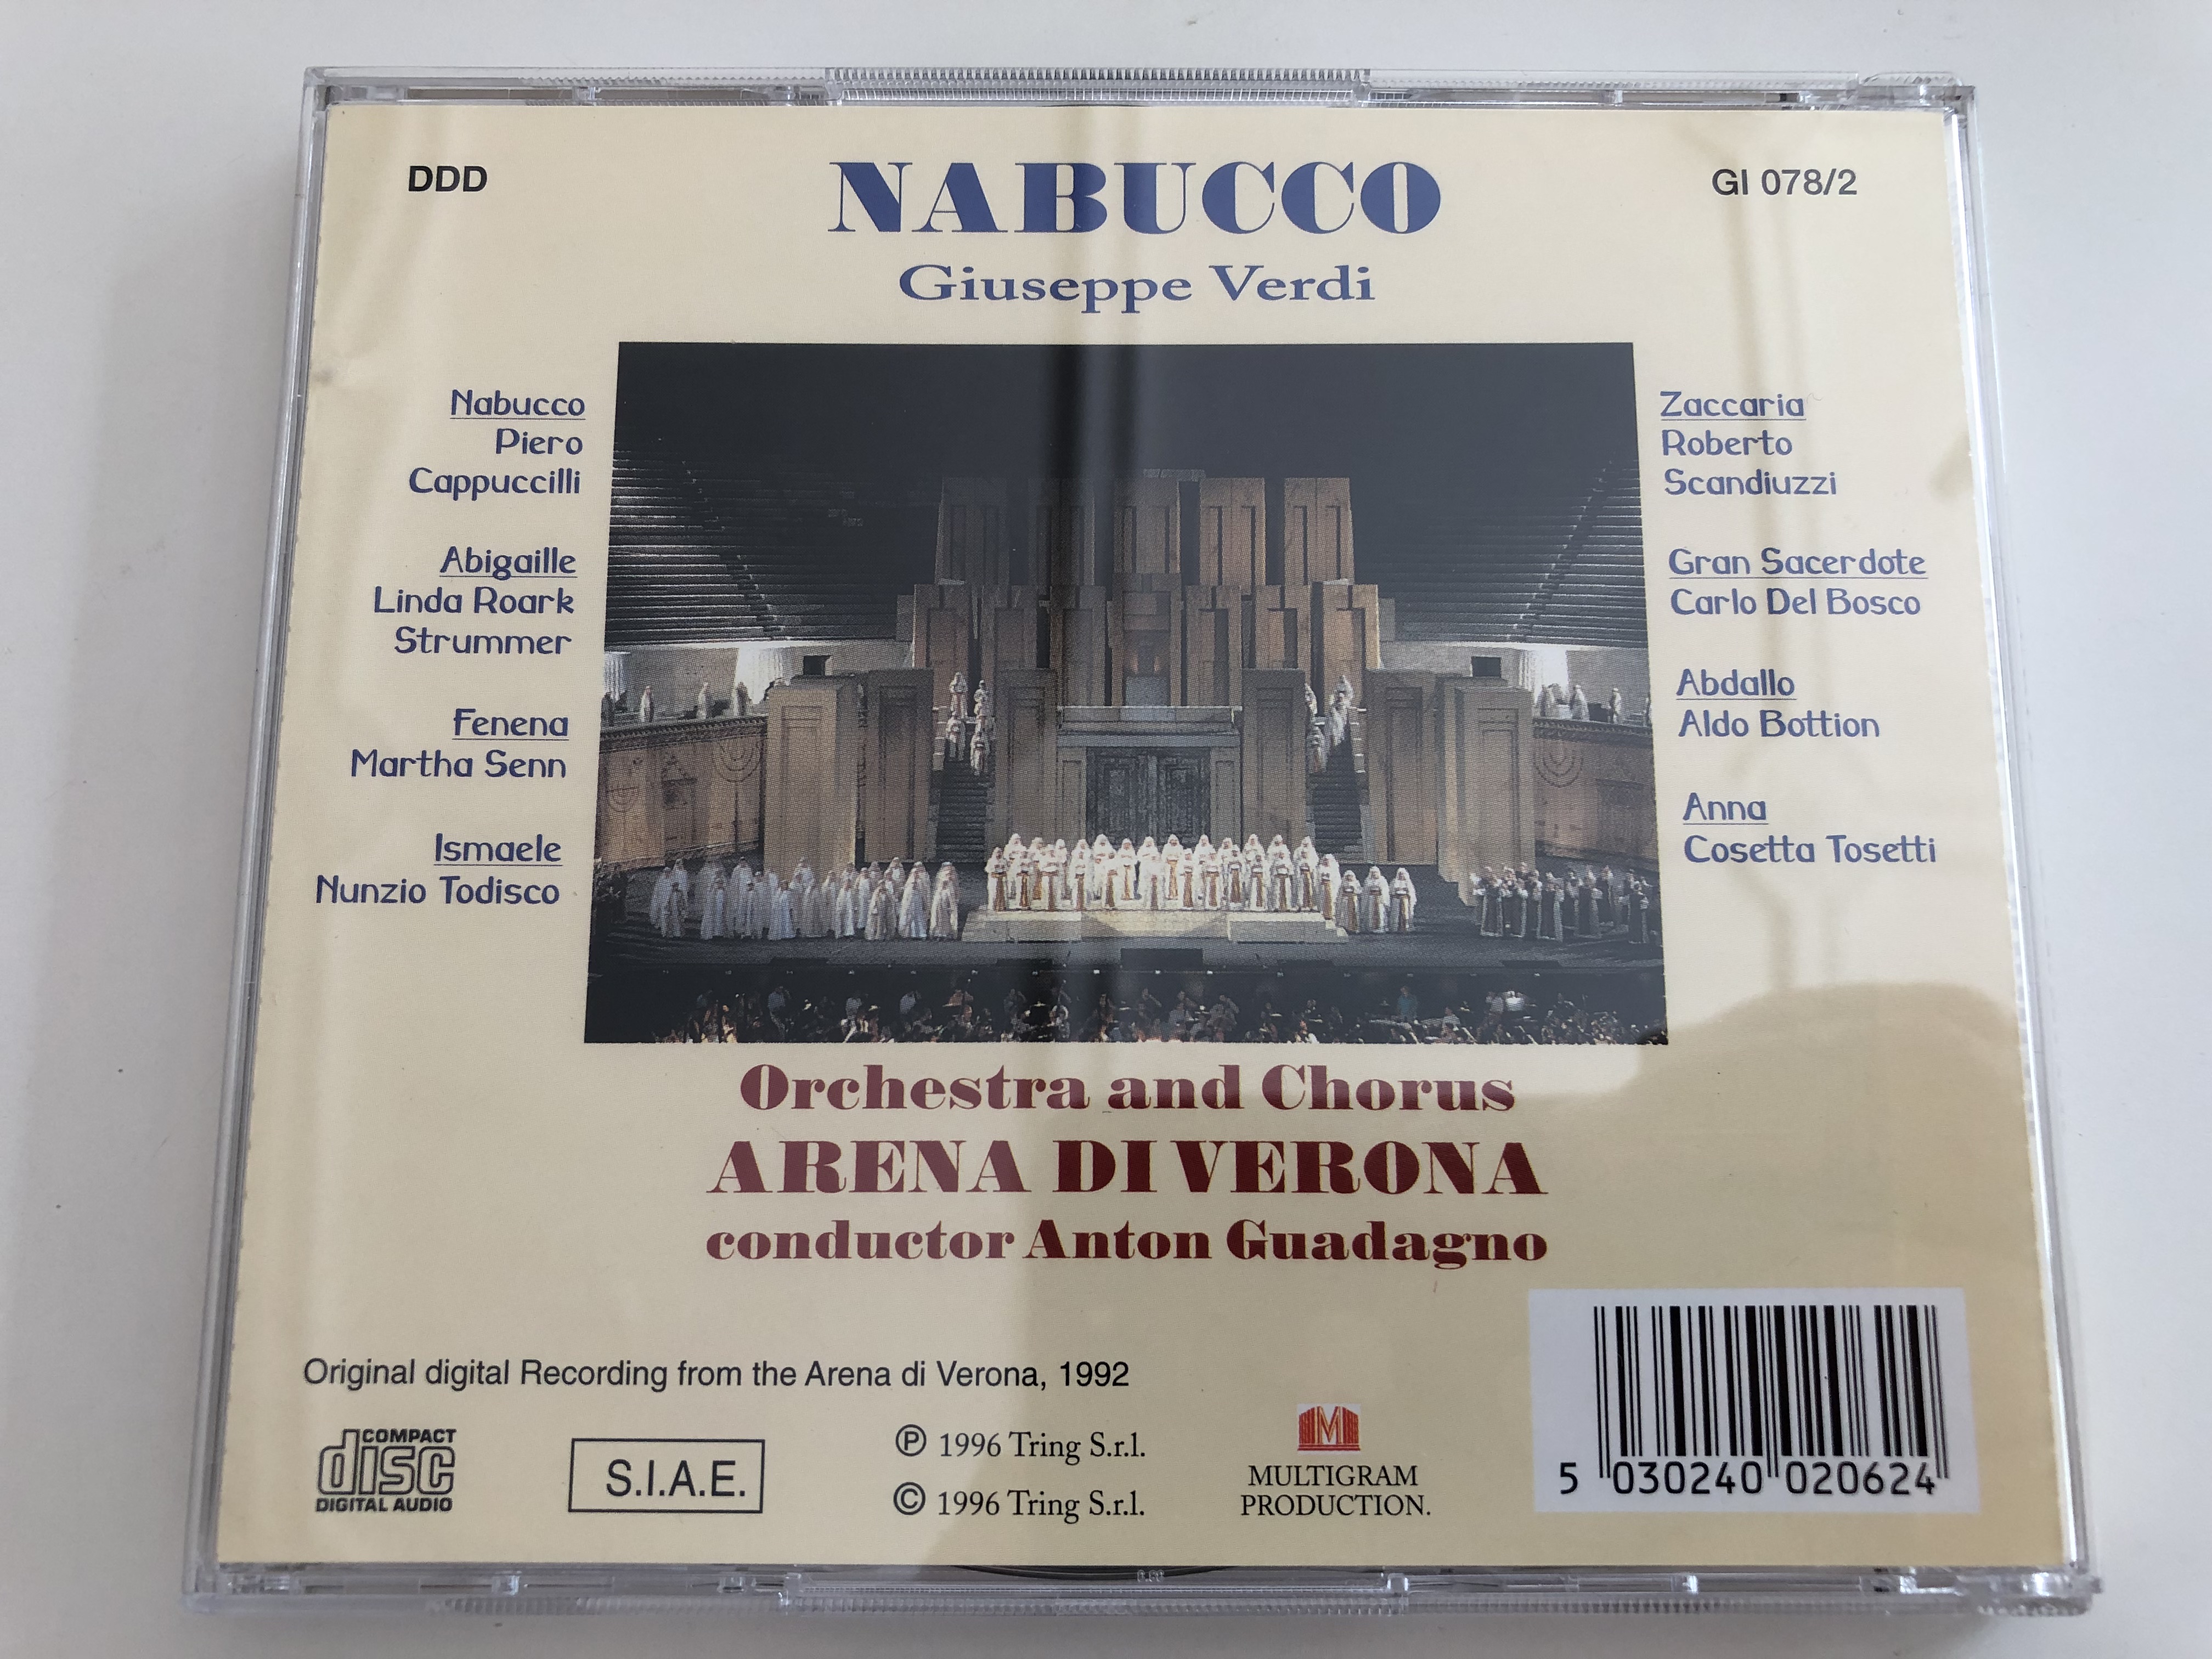 giuseppe-verdi-nabucco-arena-di-verona-festival-1992-complete-opera-2-cd-orchestra-and-chorus-arena-di-verona-p.-cappuccilli-l.-roark-strummer-m.-senn-n.-todisco-r.-scandiuzzi-conducted-by-anton-guadagno-2x-4653092-.jpg